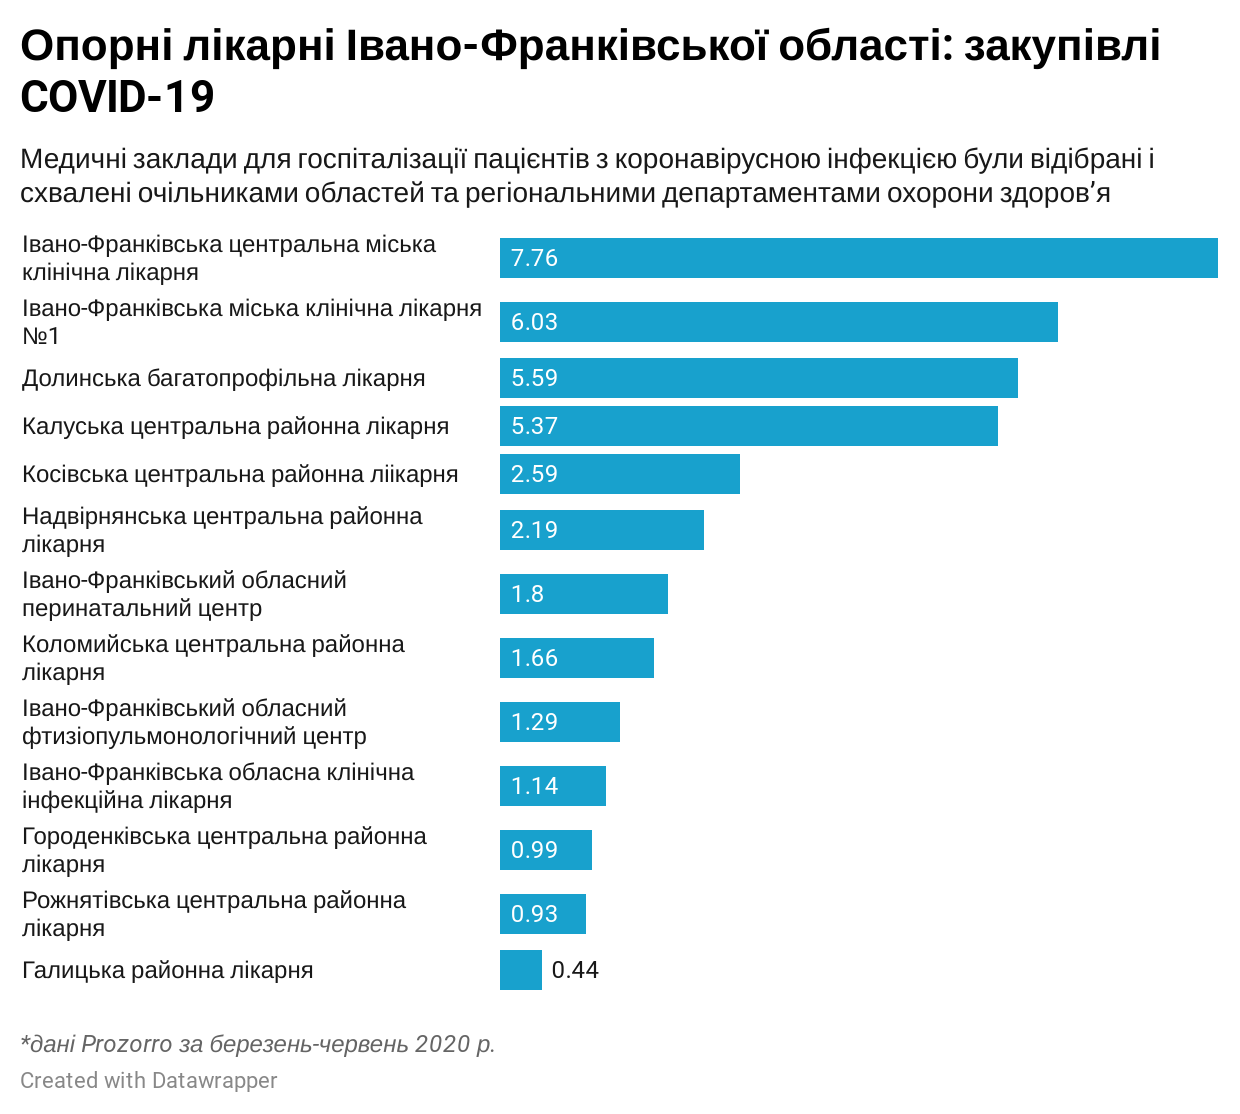 Хто поділив бюджет на подолання пандемії в Івано-Франківській області